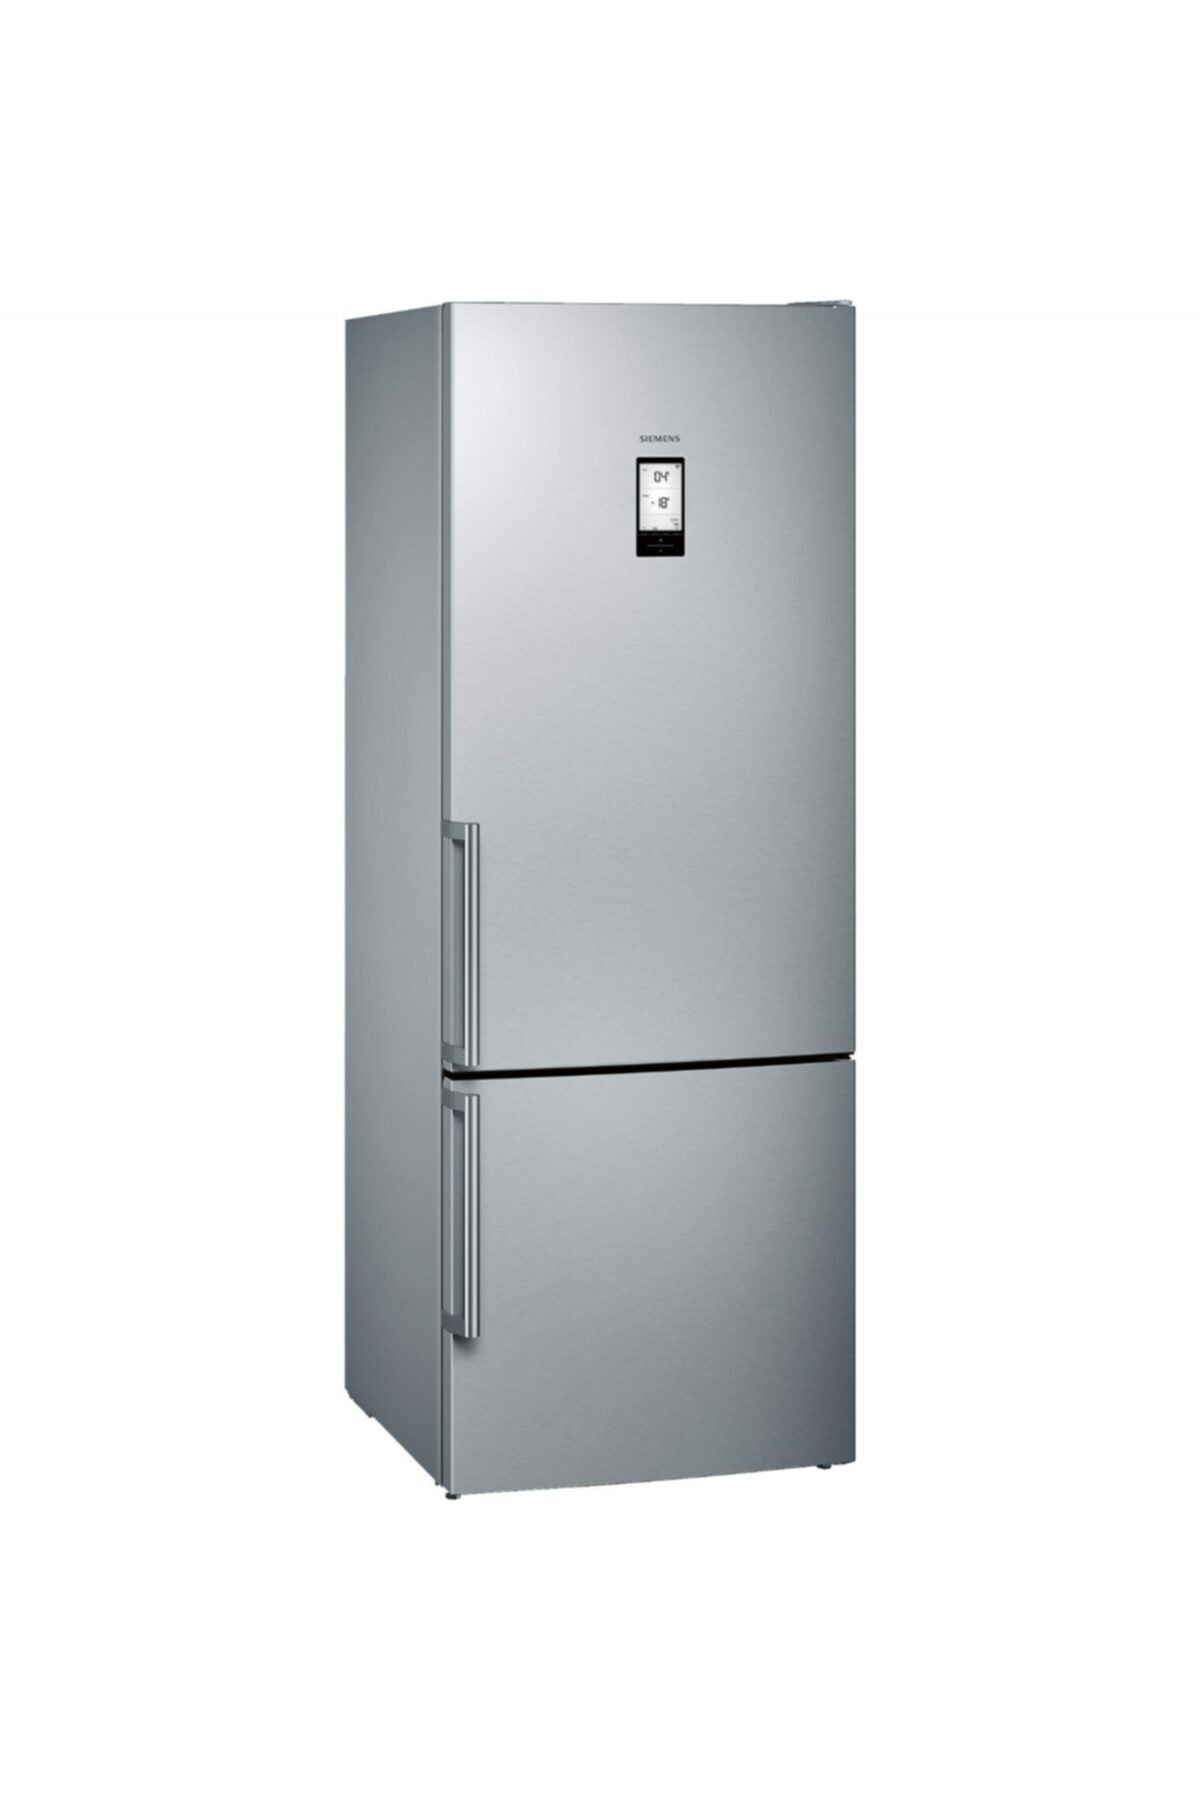 Siemens Inox Buzdolabı